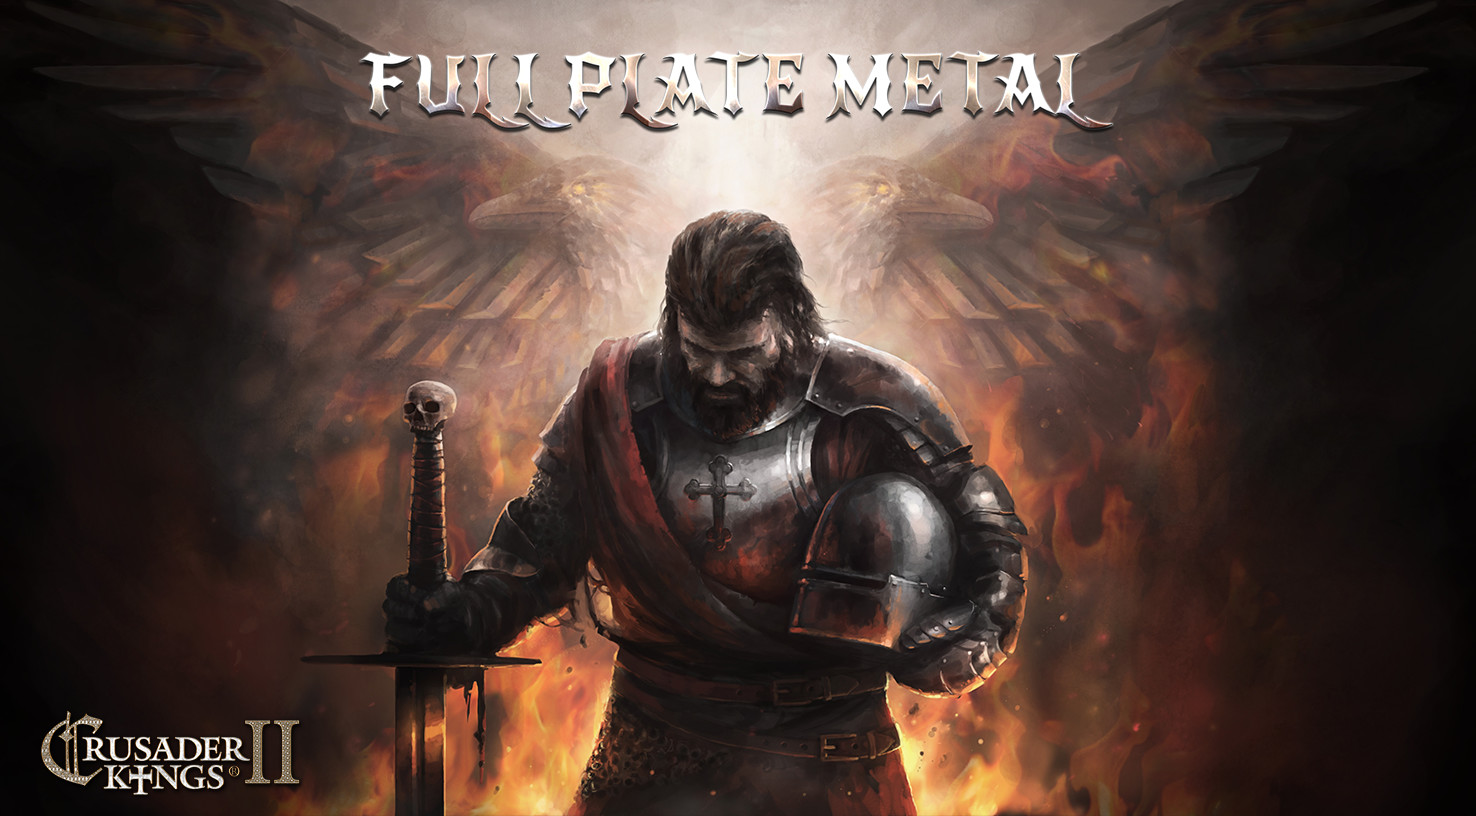 Crusader Kings II - Full Plate Metal DLC Steam CD Key, 1.84 usd